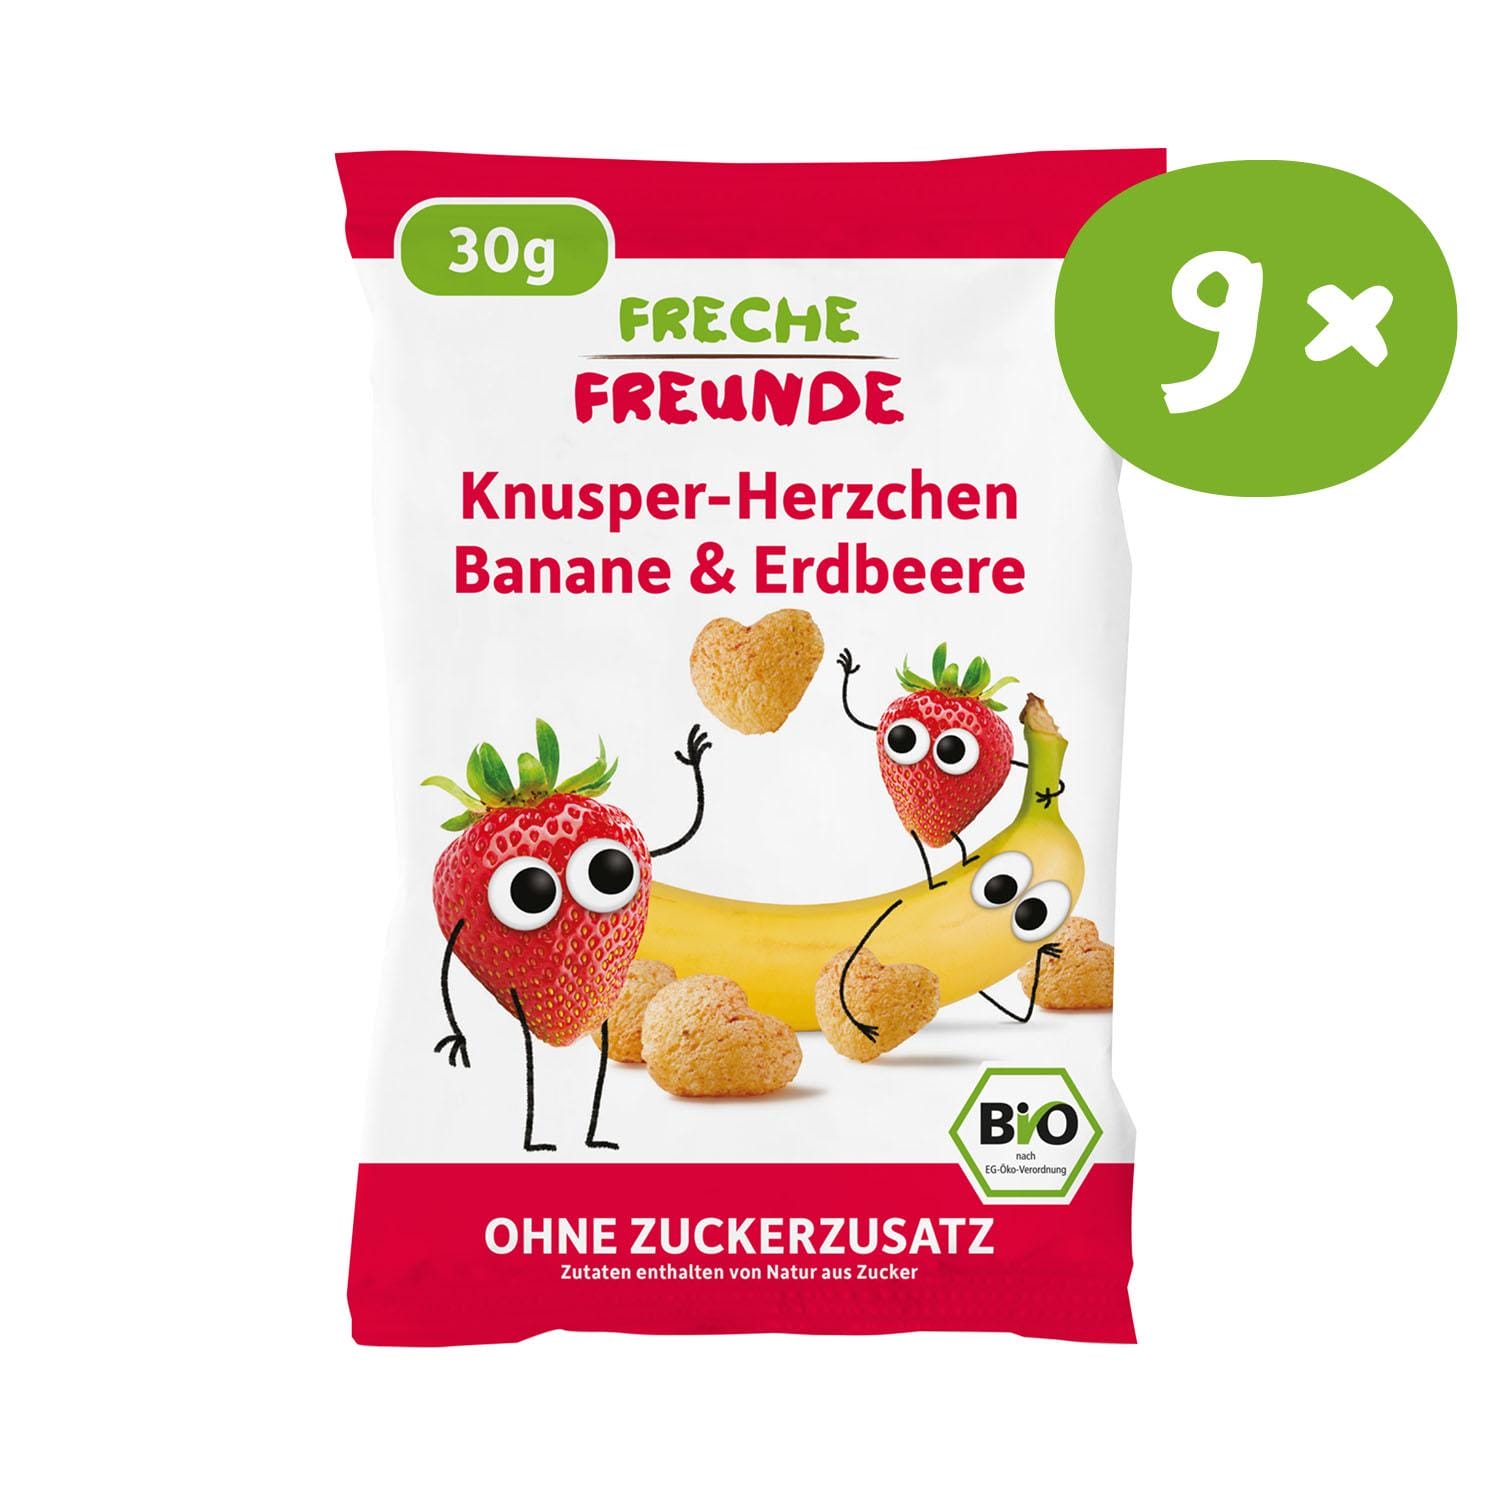 Knusper-Herzchen Banane & Erdbeere